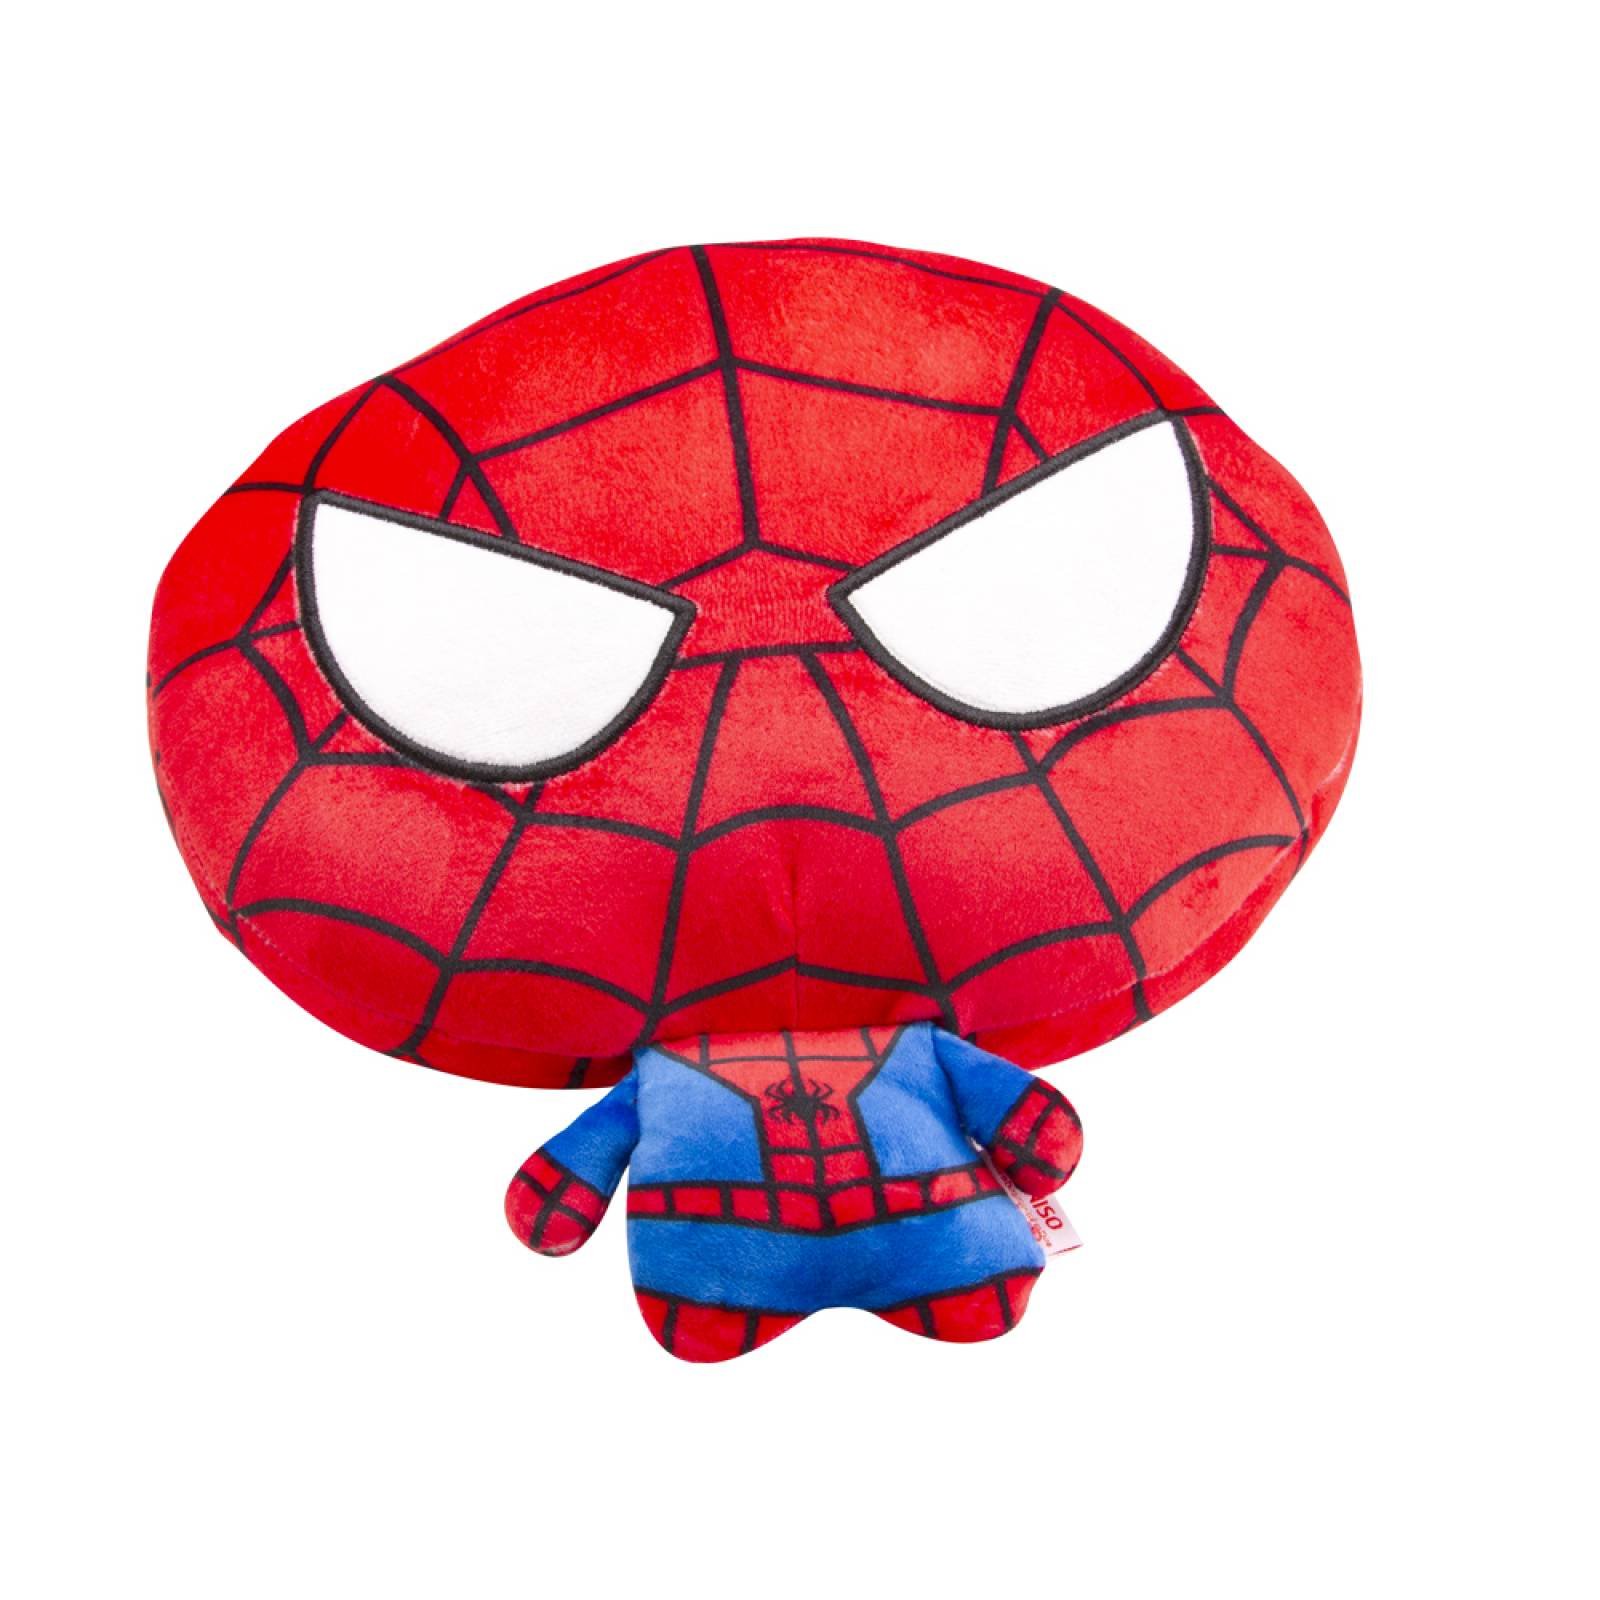 Peluche de Spider Man  Multicolor  Mediano